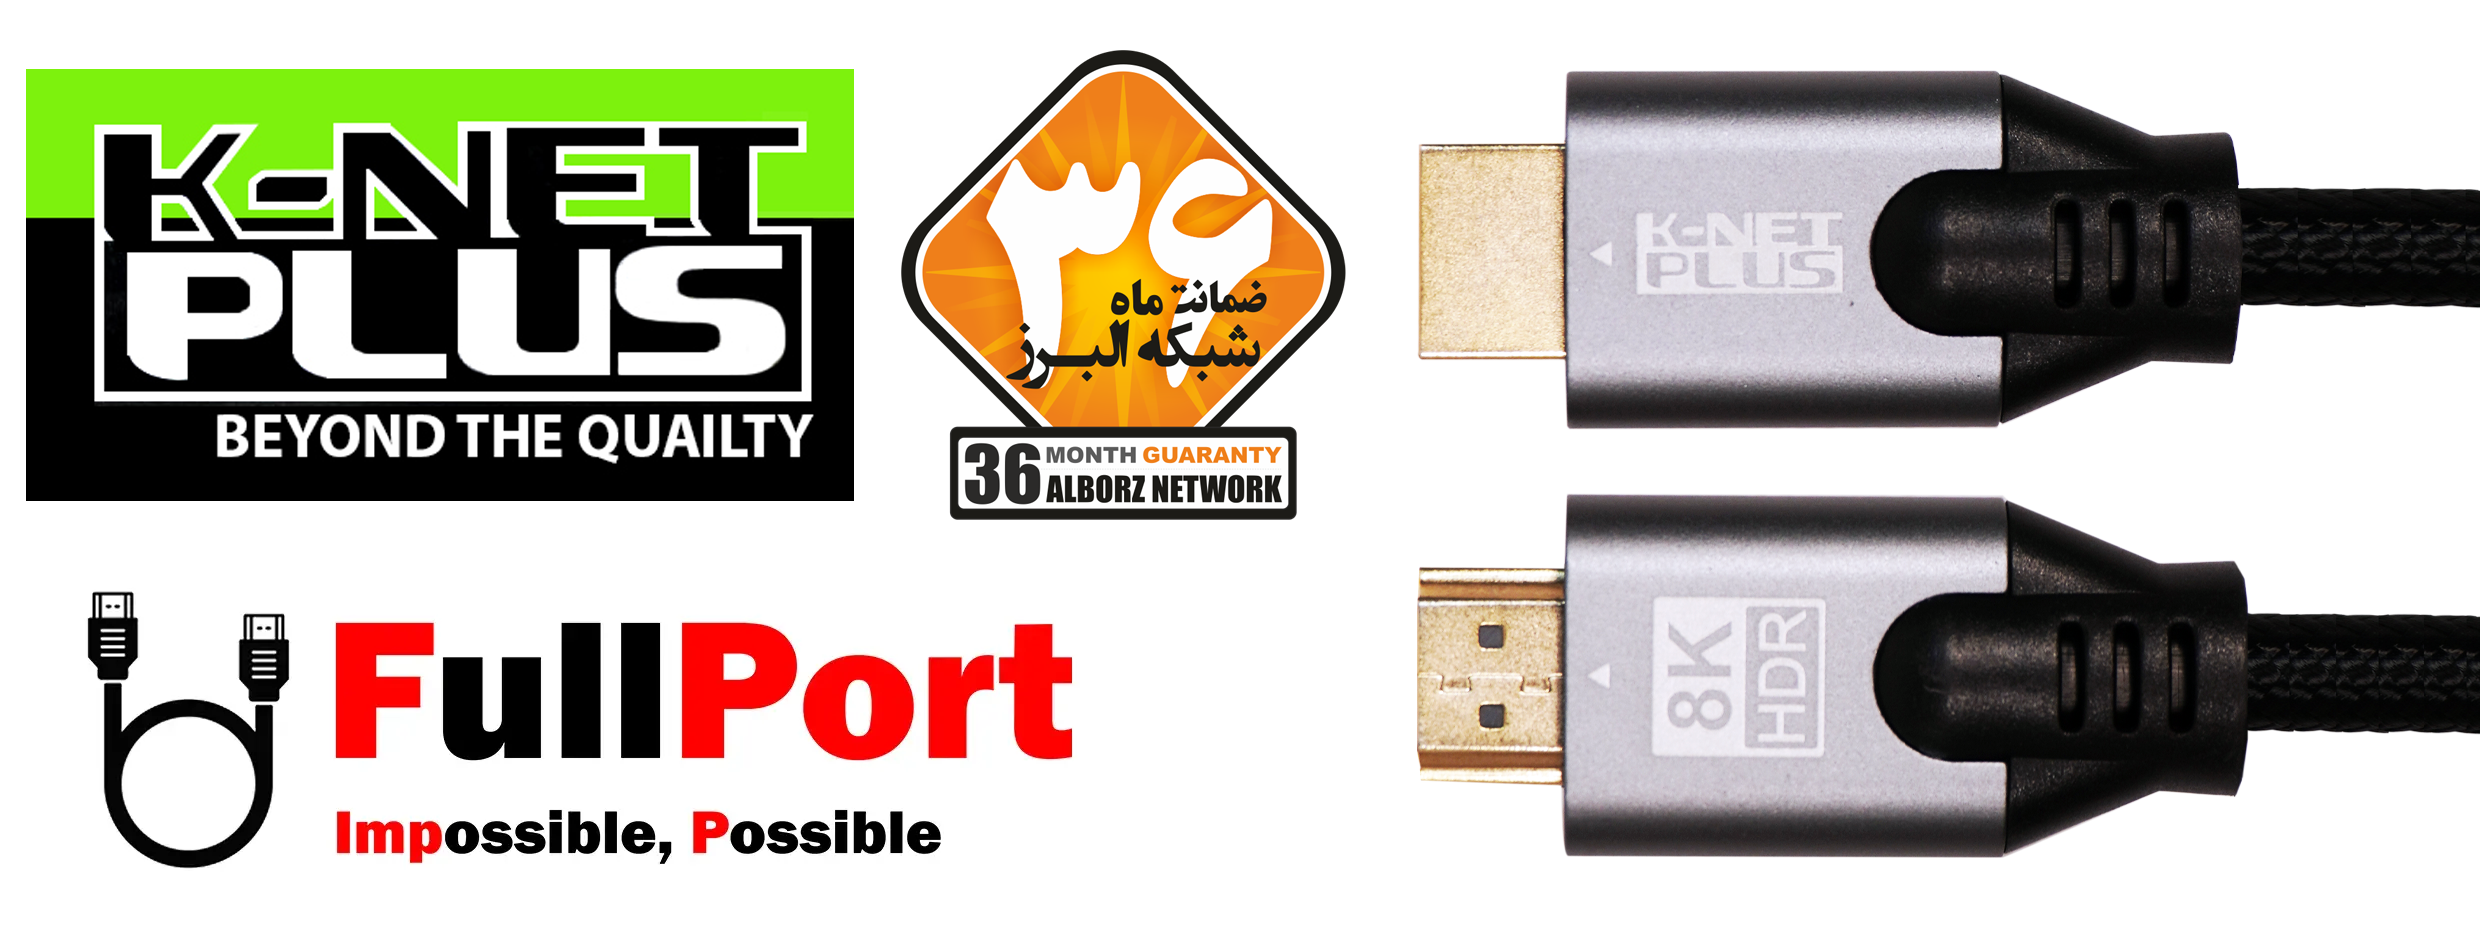 خرید اینترنتی کابل HDMI کی نت پلاس | K-NET PLUS با گارانتی شبکه البرز 36 ماه از فروشگاه اینترنتی فول پورت